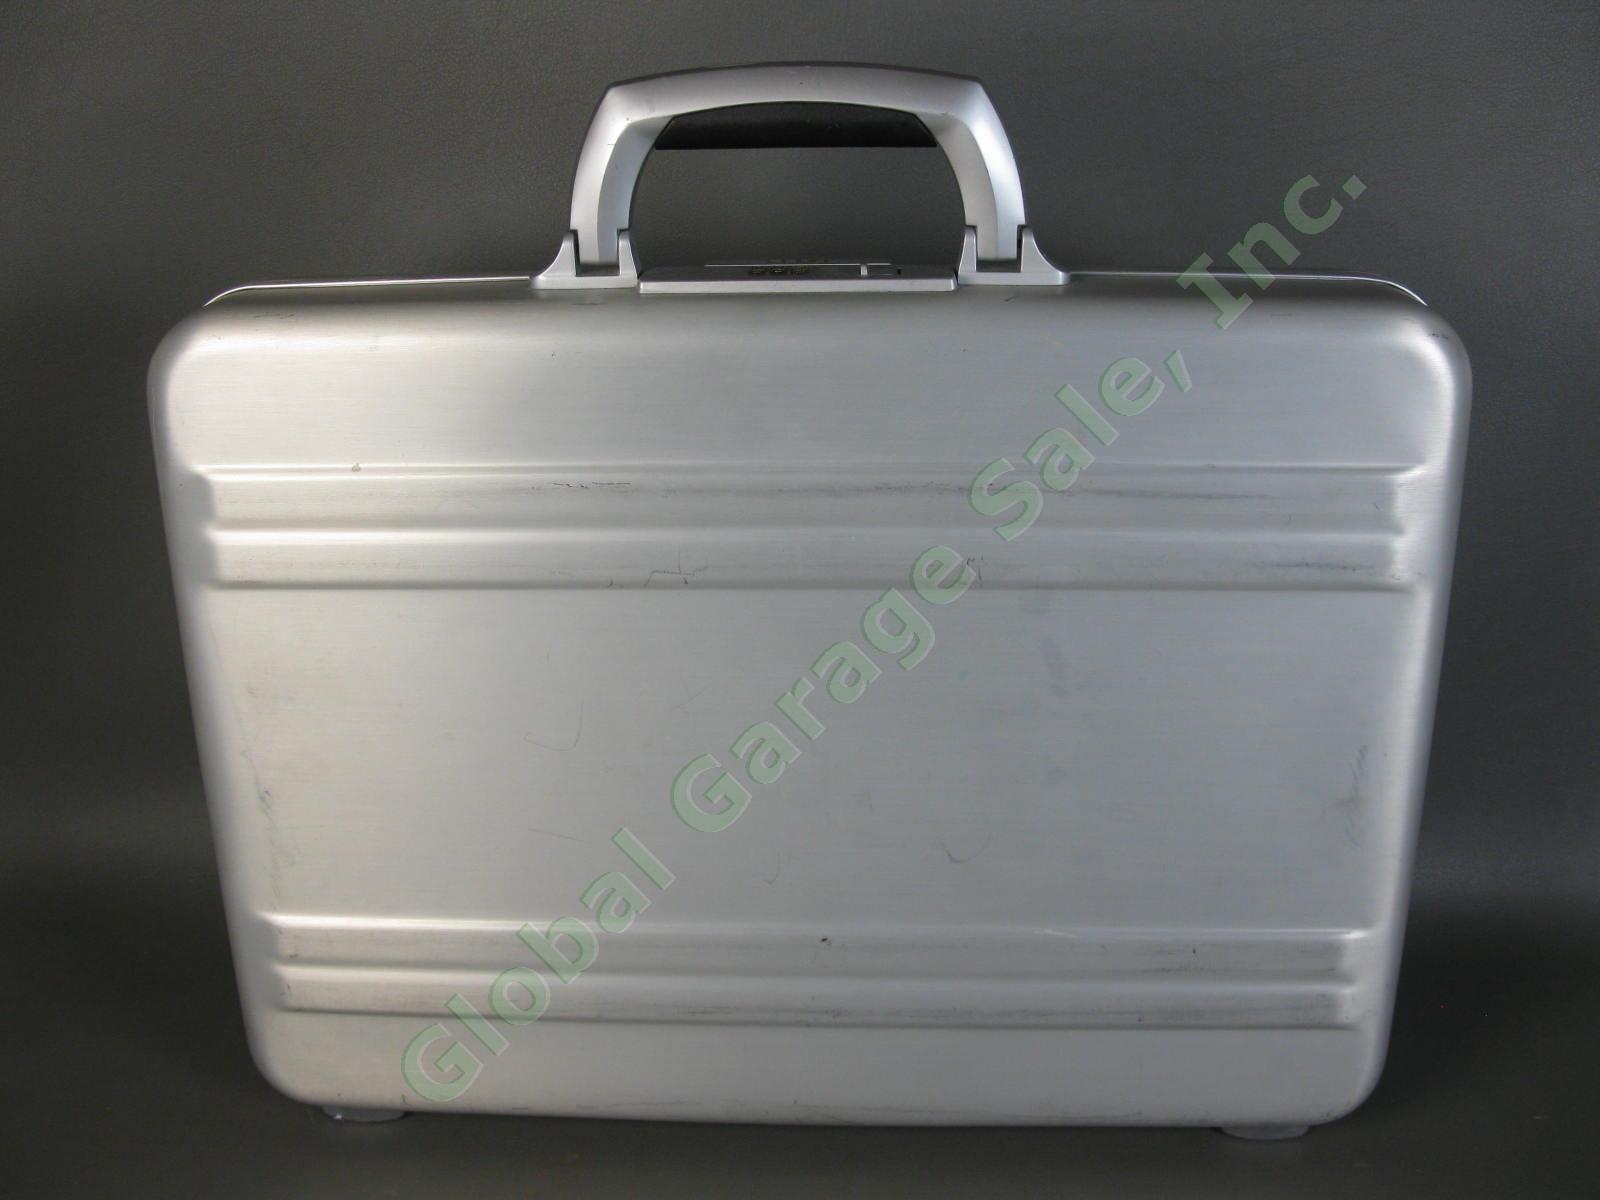 Halliburton ZERO Aluminum Briefcase 18"x13"x3" Combo Lock Excellent Condition NR 2